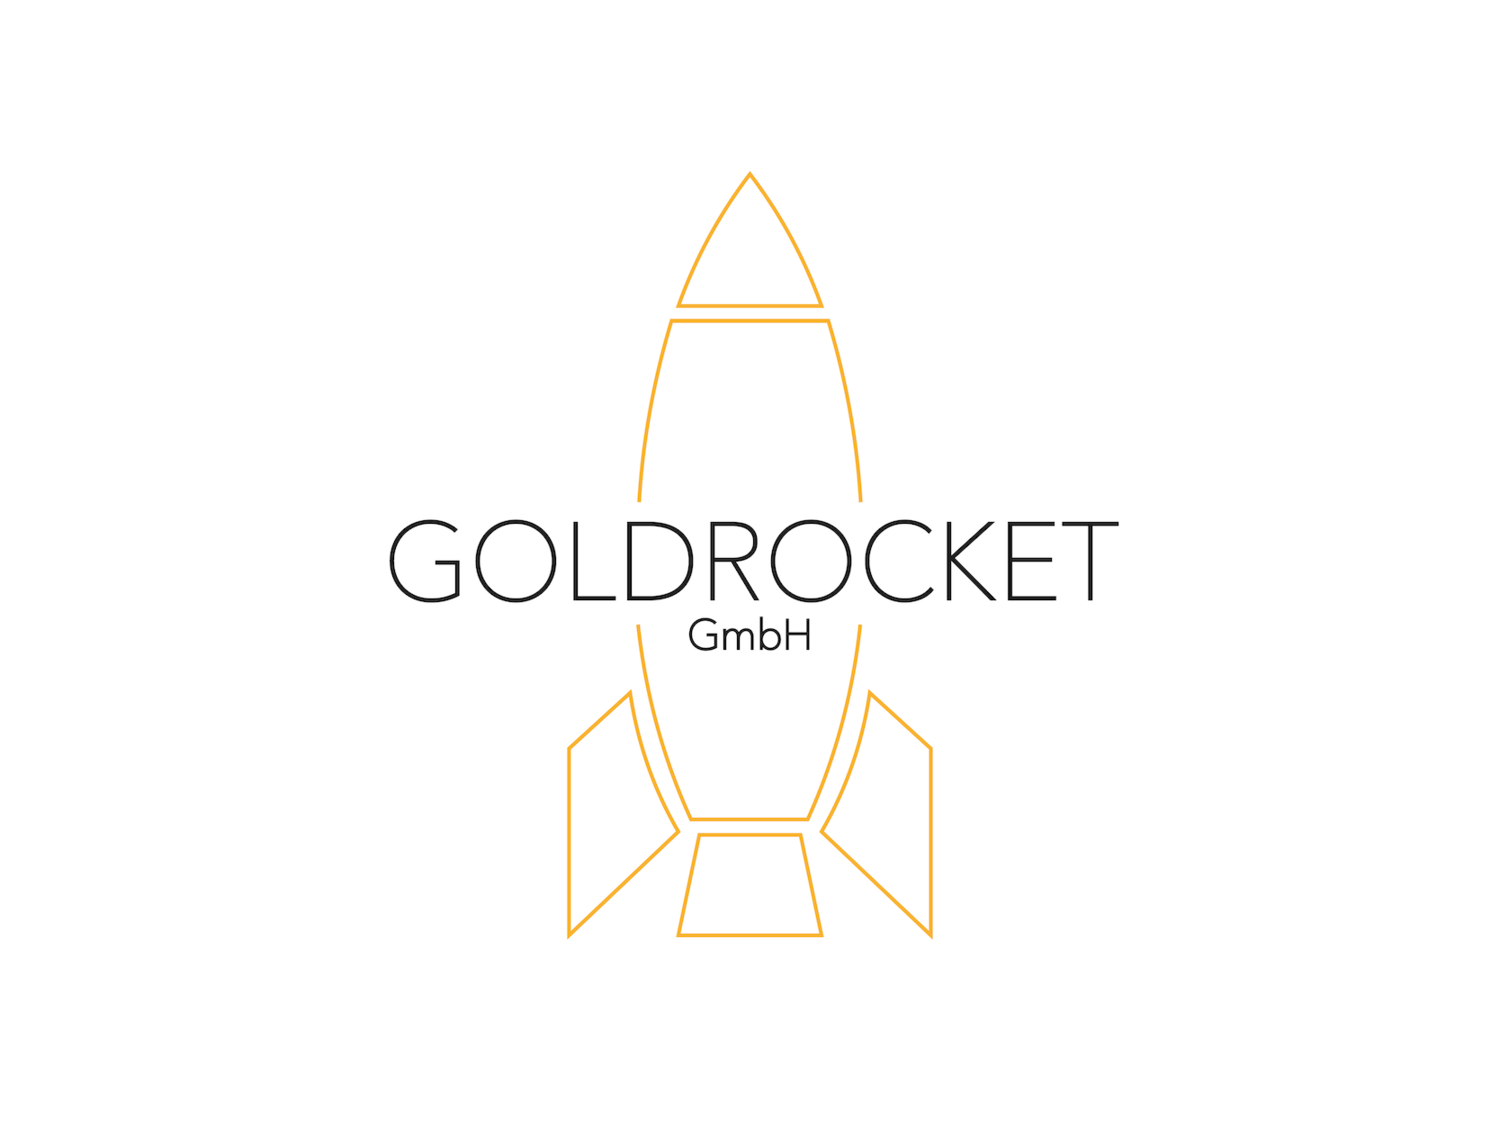 GOLDROCKET GmbH